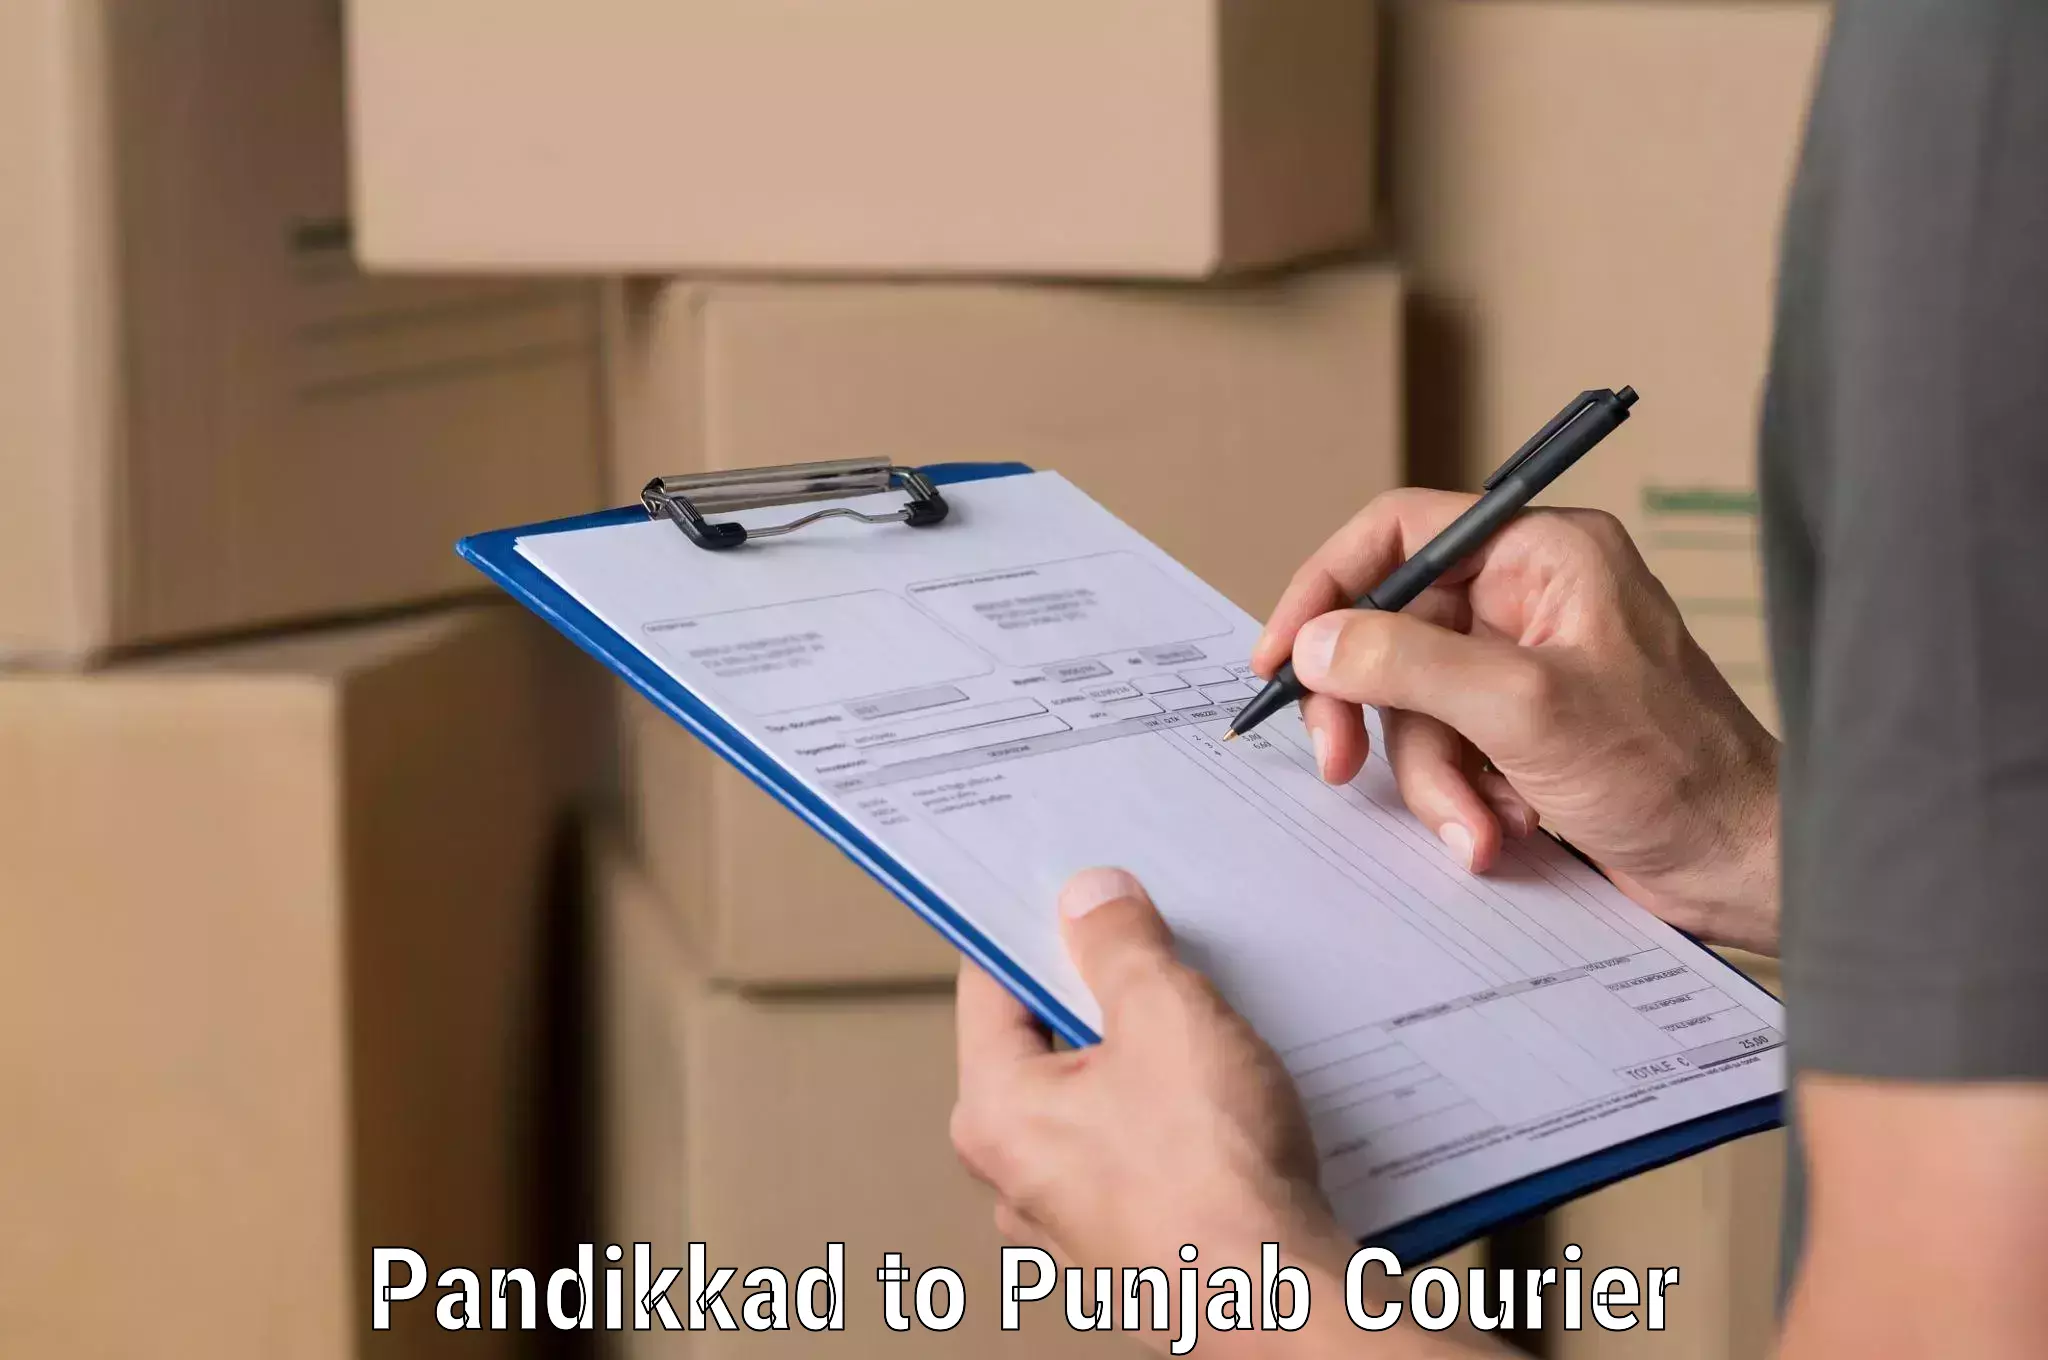 Secure shipping methods Pandikkad to Punjab